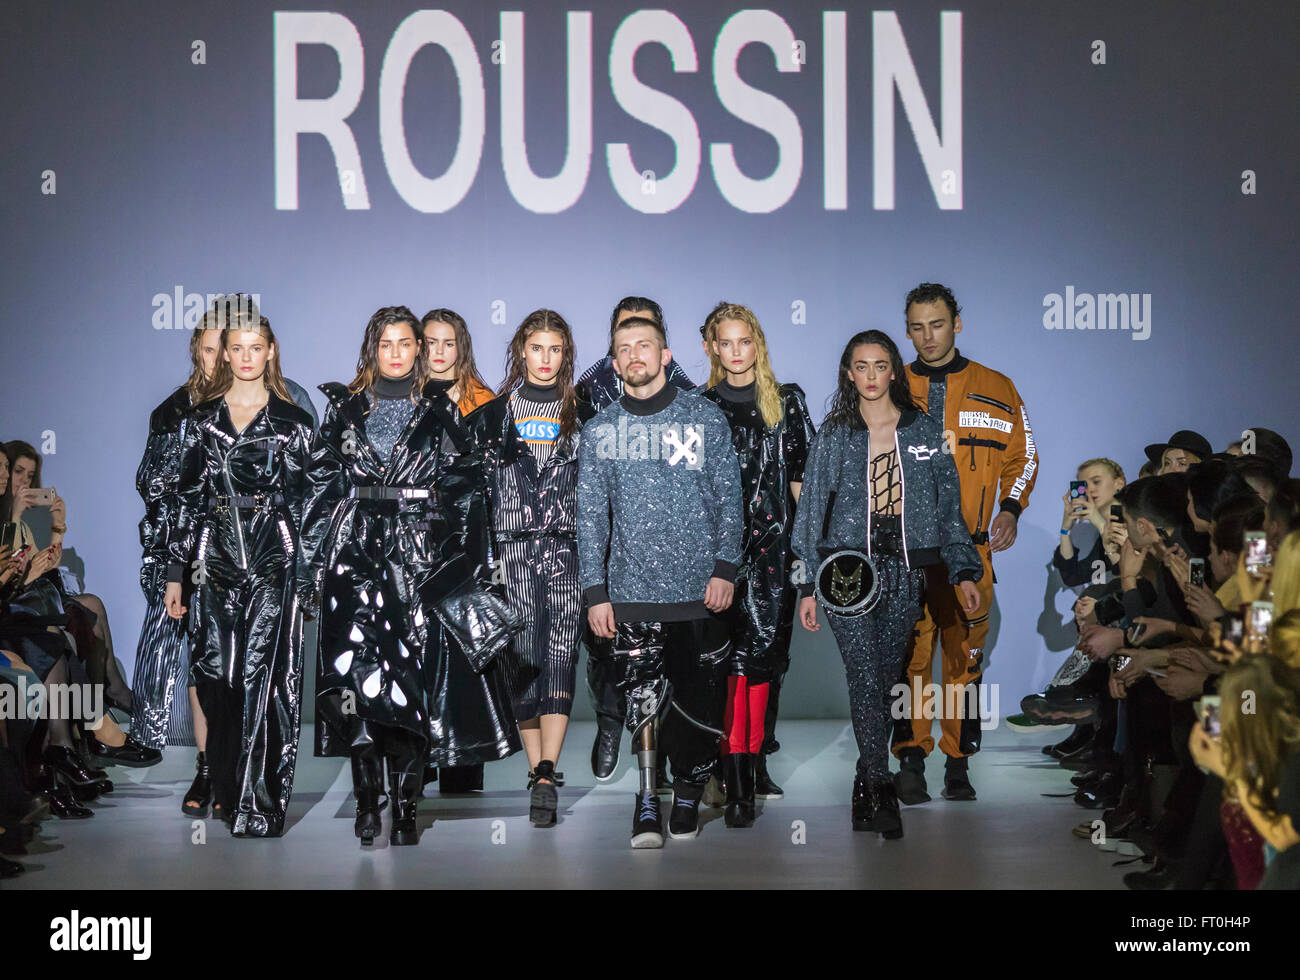 Kiev, Ucrania - Marzo 21, 2016: Modelos caminar en la pasarela durante el Fashion Show ROUSSIN por Sofía Rousinovich como parte de la 38ª Ukra Foto de stock